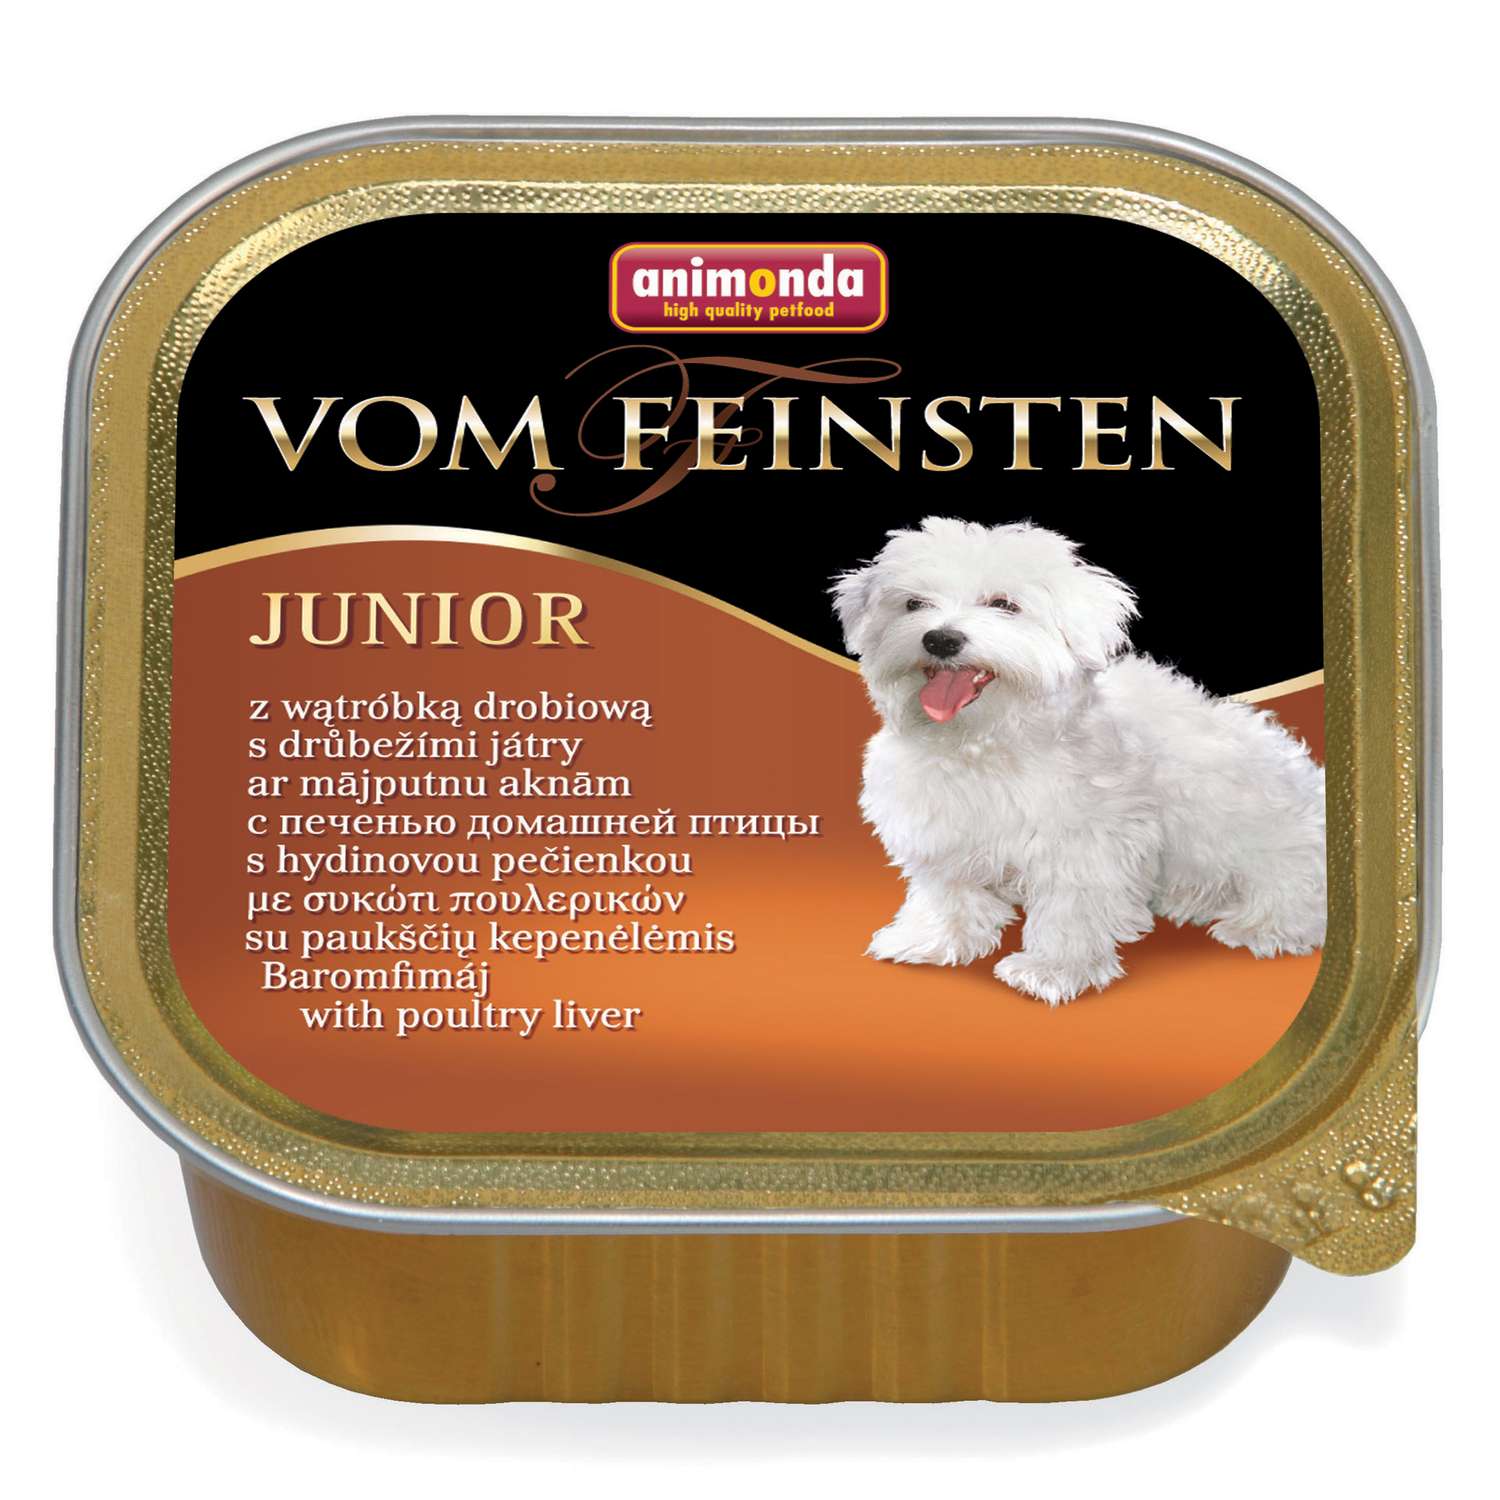 Корм для щенков ANIMONDA 150г Vom Feinsten Junior с печенью домашней птицы консервированный - фото 1